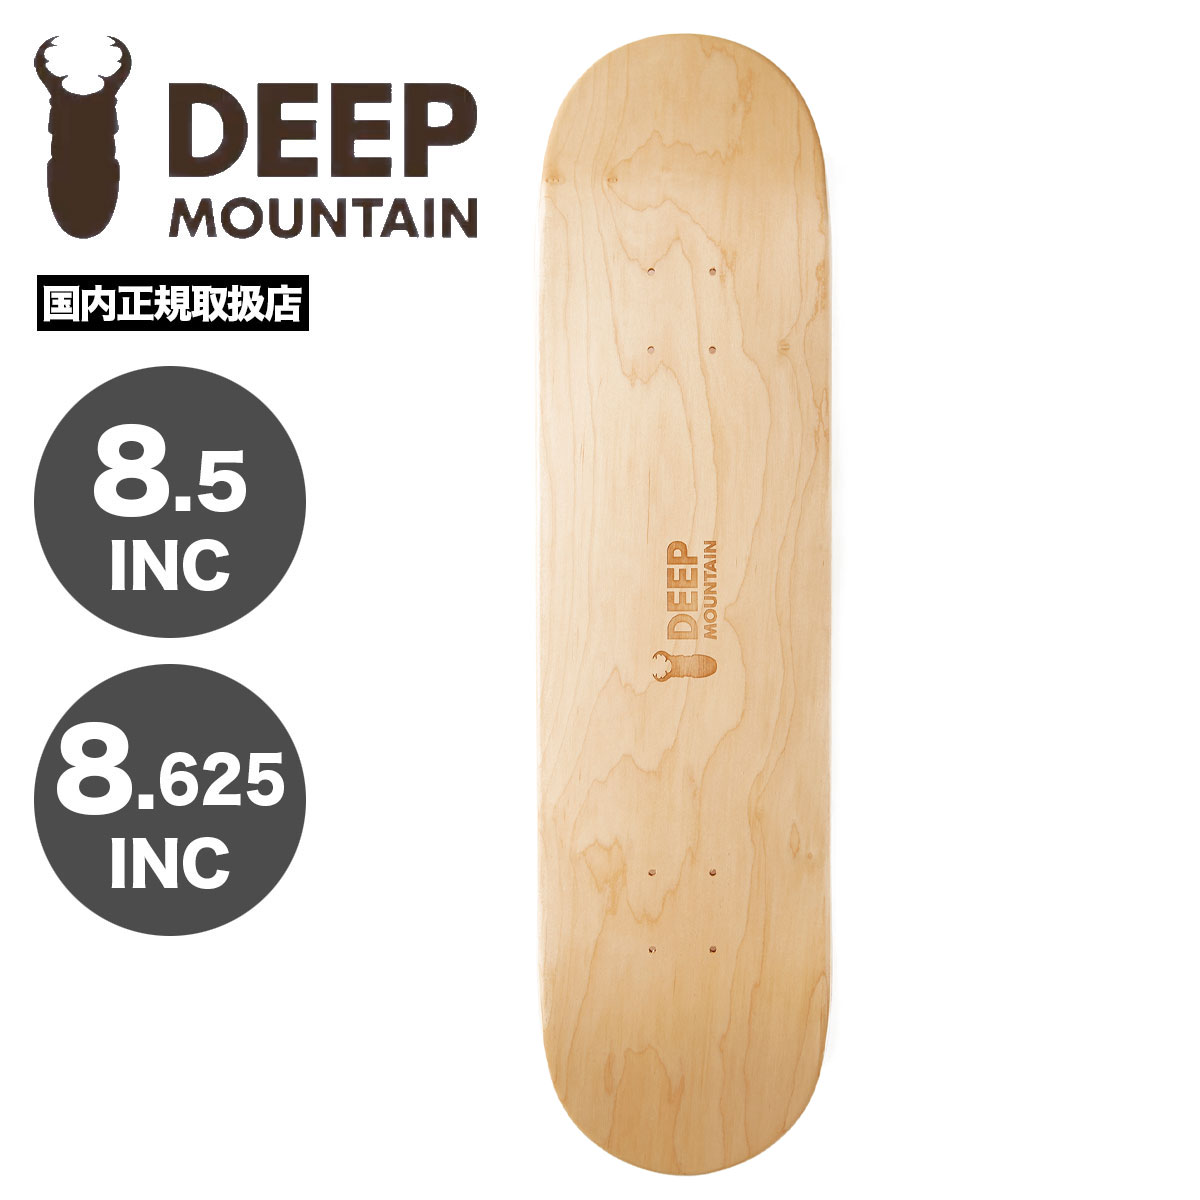 DEEP MOUNTAIN ディープマウンテン デッキ スケートボード デッキ 8.5 8.625 スケボー デッキ スケートデッキ 深山 ミヤマ 日本製 SILH..